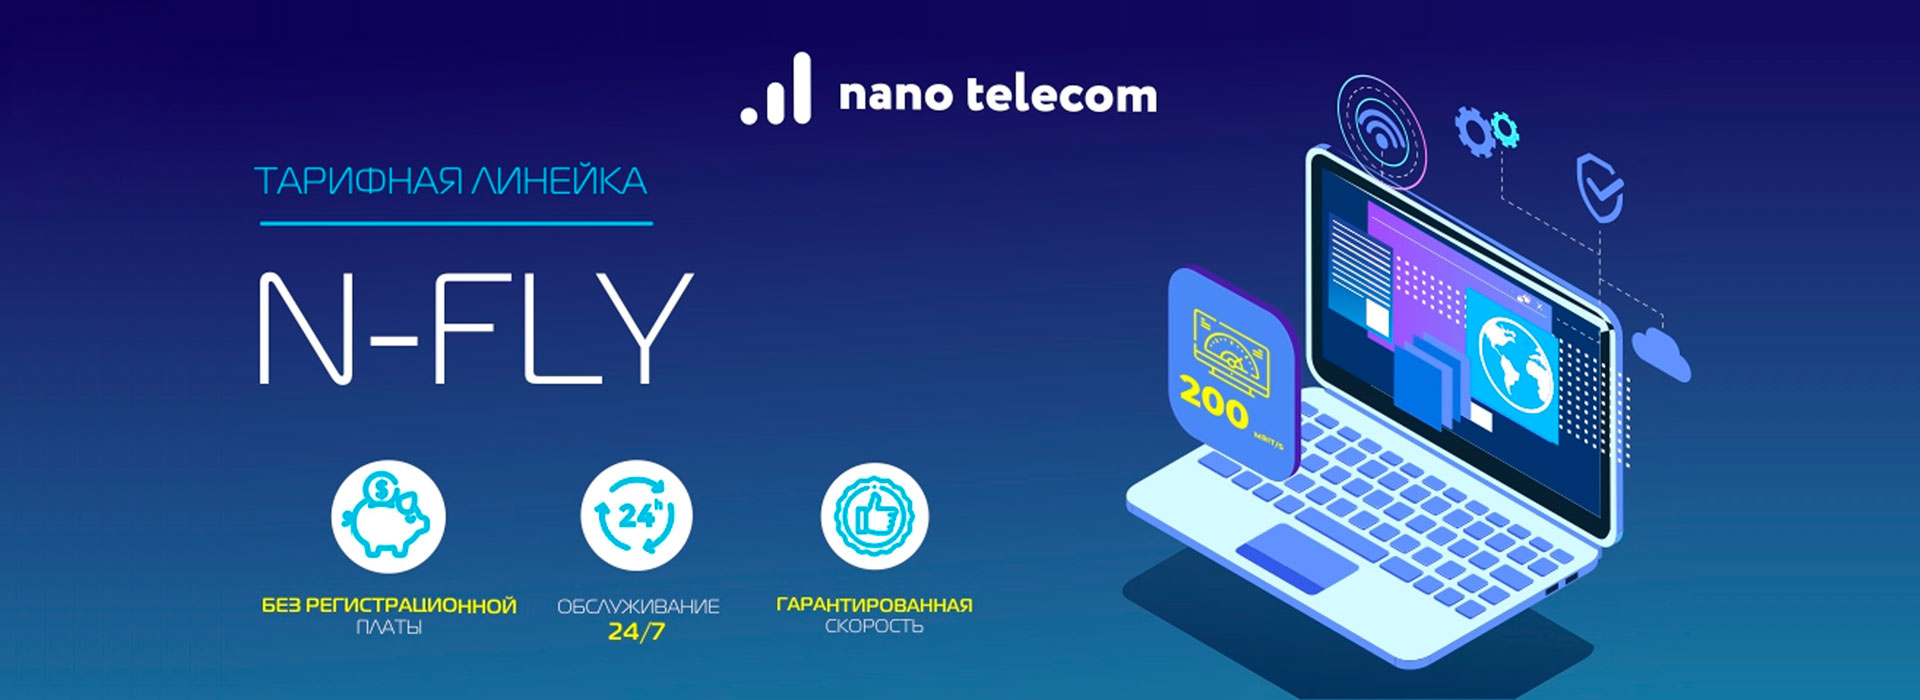 Nano Telecom